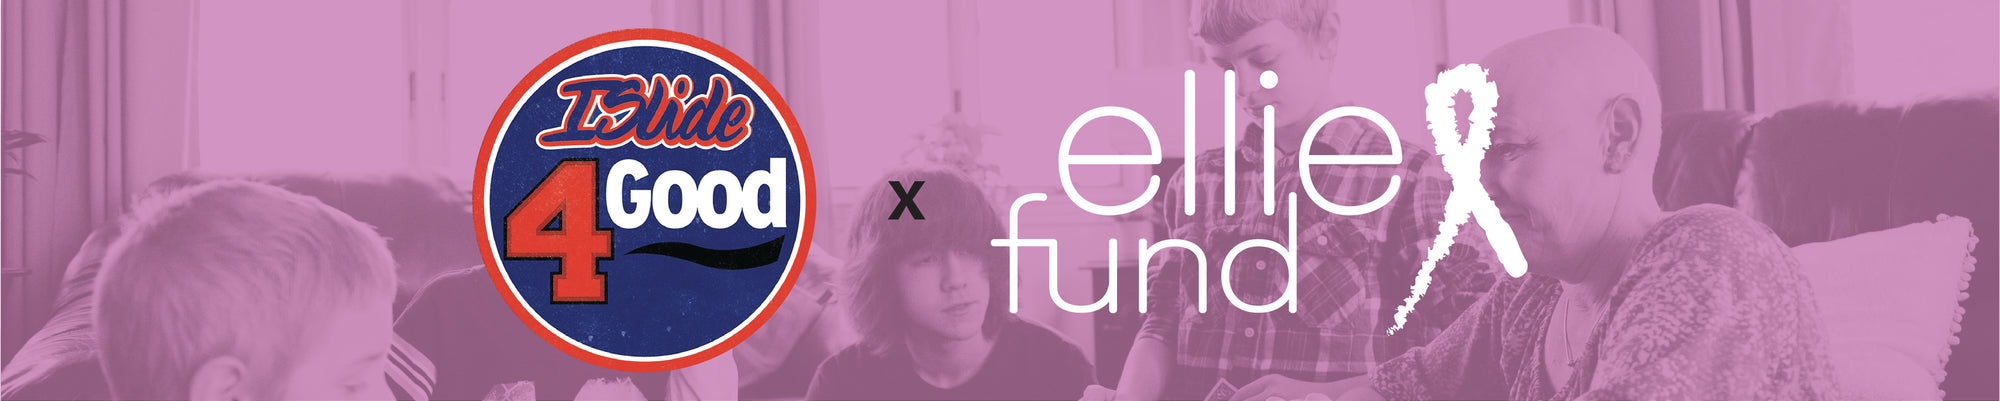 Ellie Fund